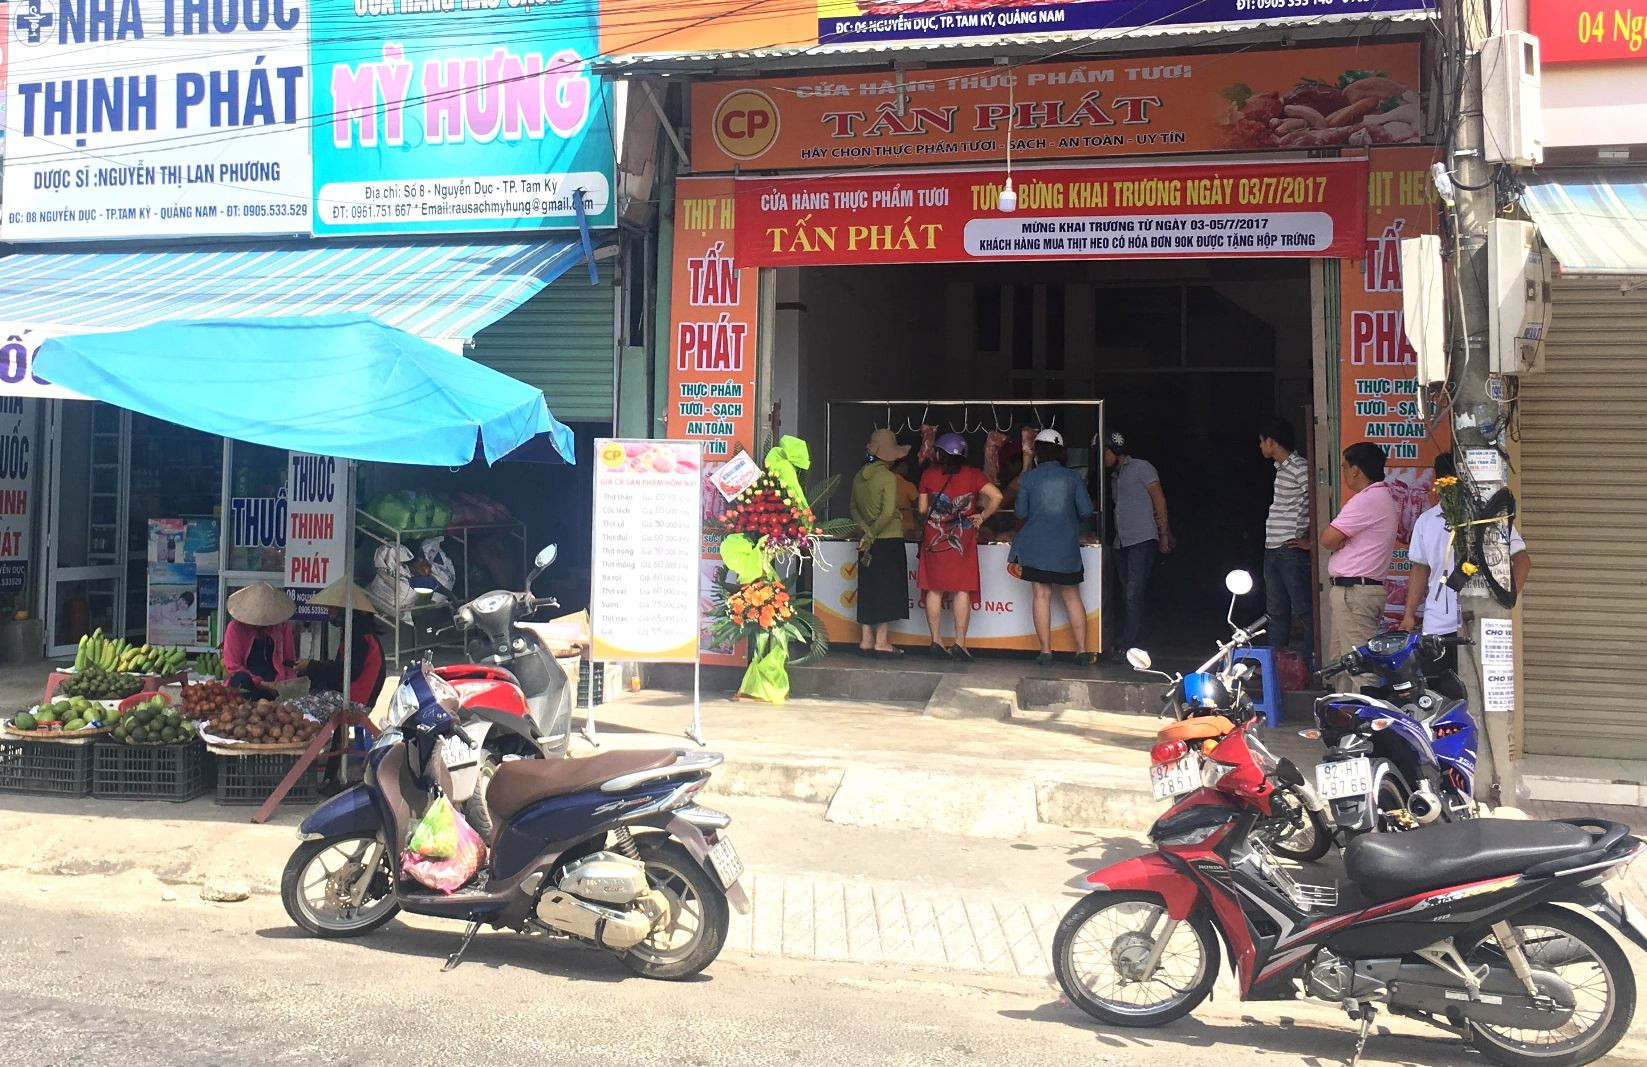 Cửa tháng thực phẩm tươi Tấn Phát nằm đối diện với cổng chính Chợ Thương mại Tam Kỳ. Ảnh: PHAN VINH